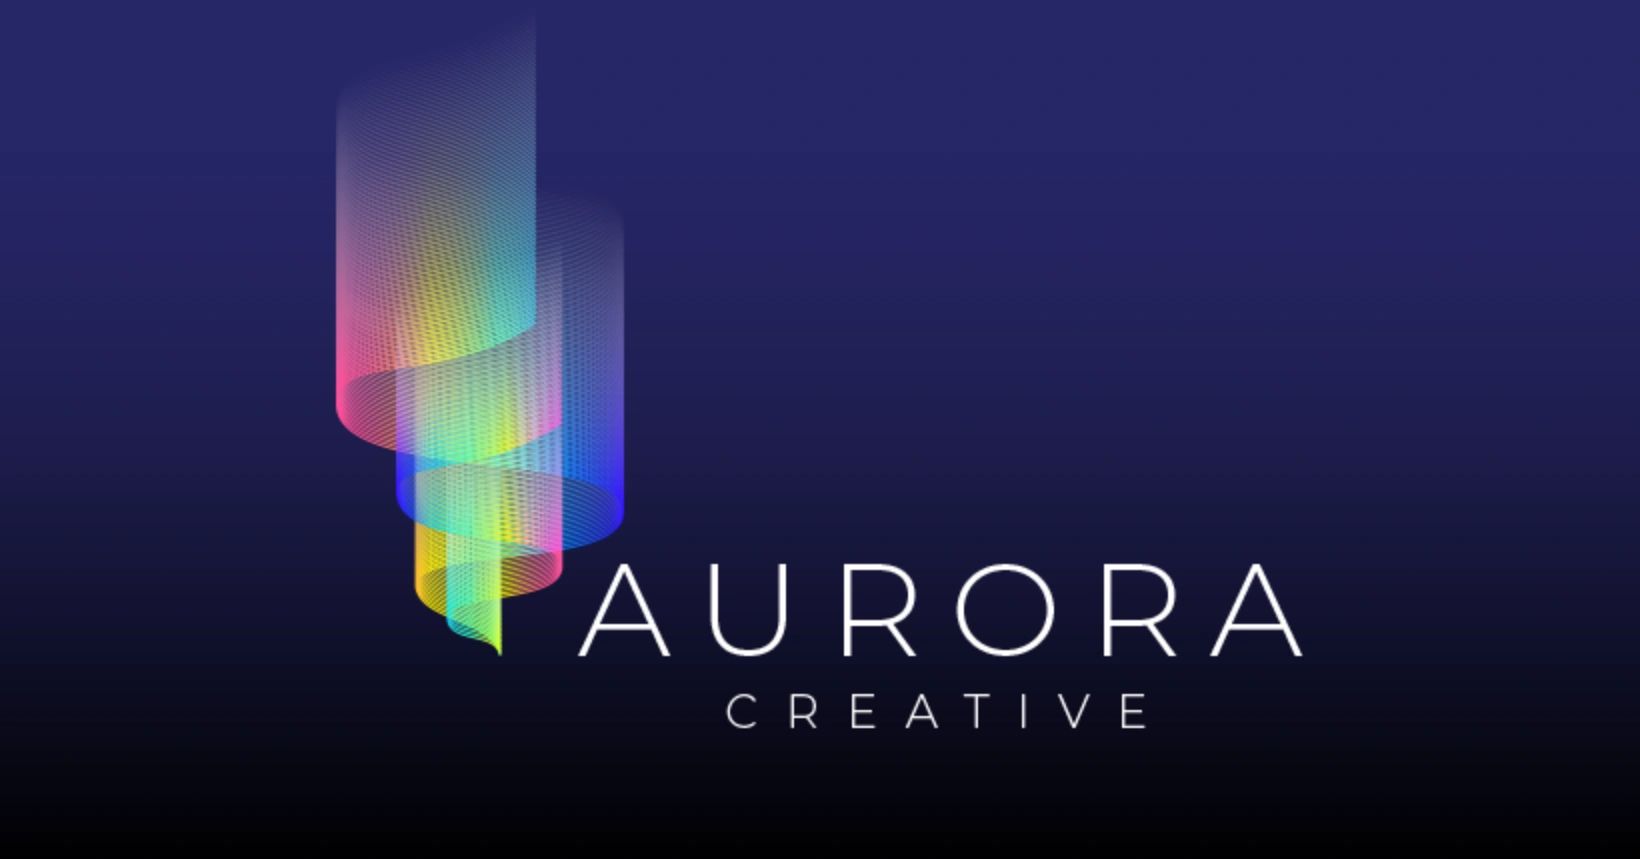 Aurora  Graphic design activities, Learning graphic design